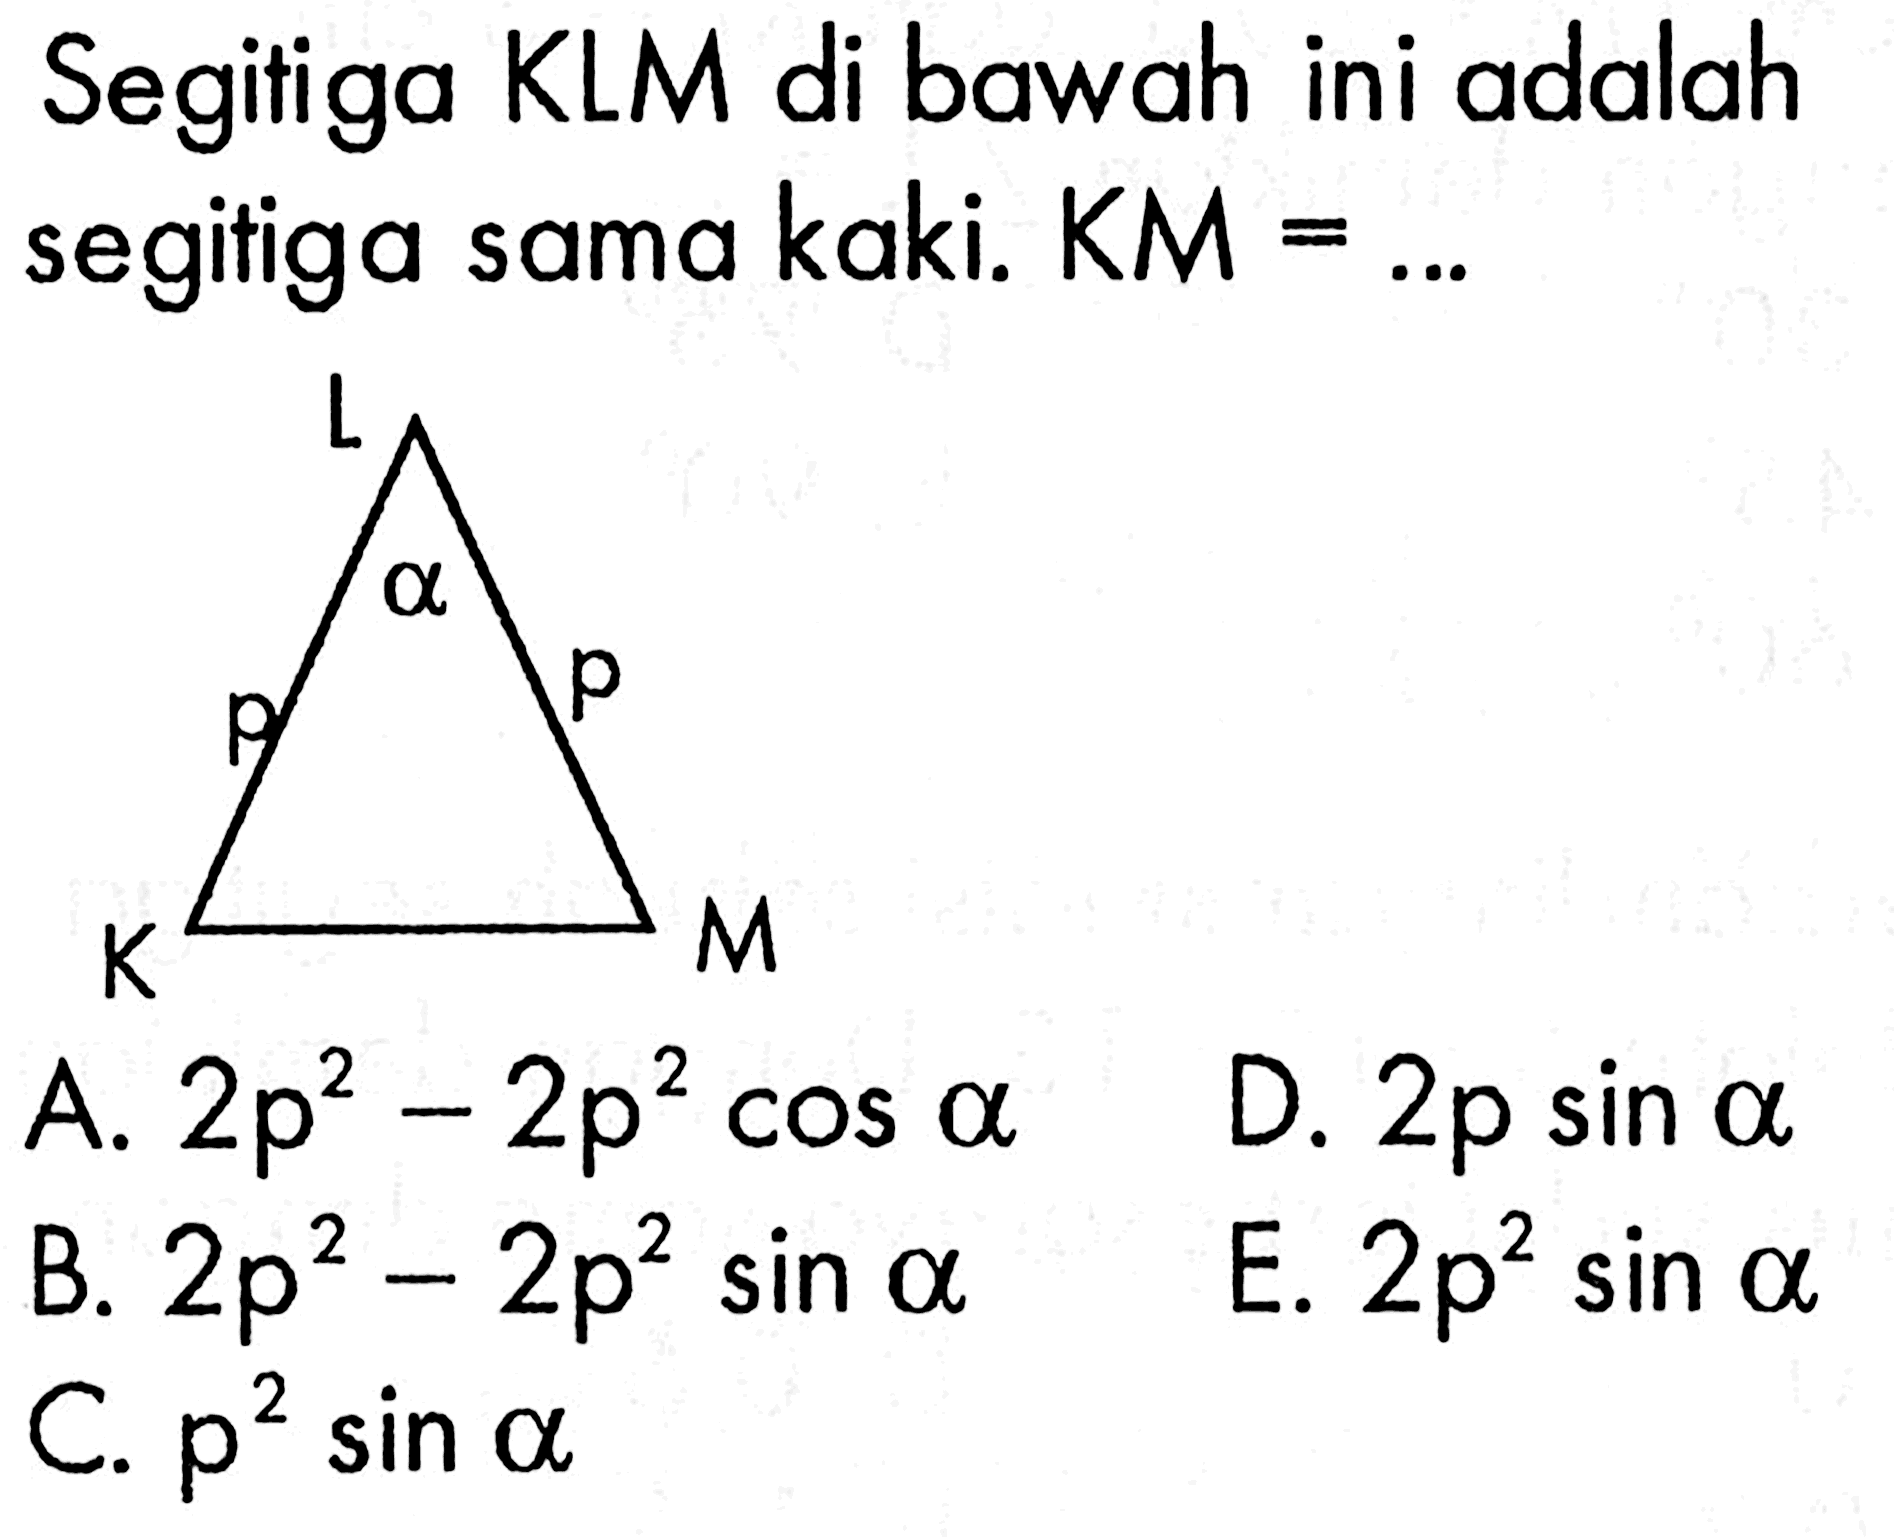 Segitiga KLM di bawah ini adalah segitiga sama kaki.  KM=... 